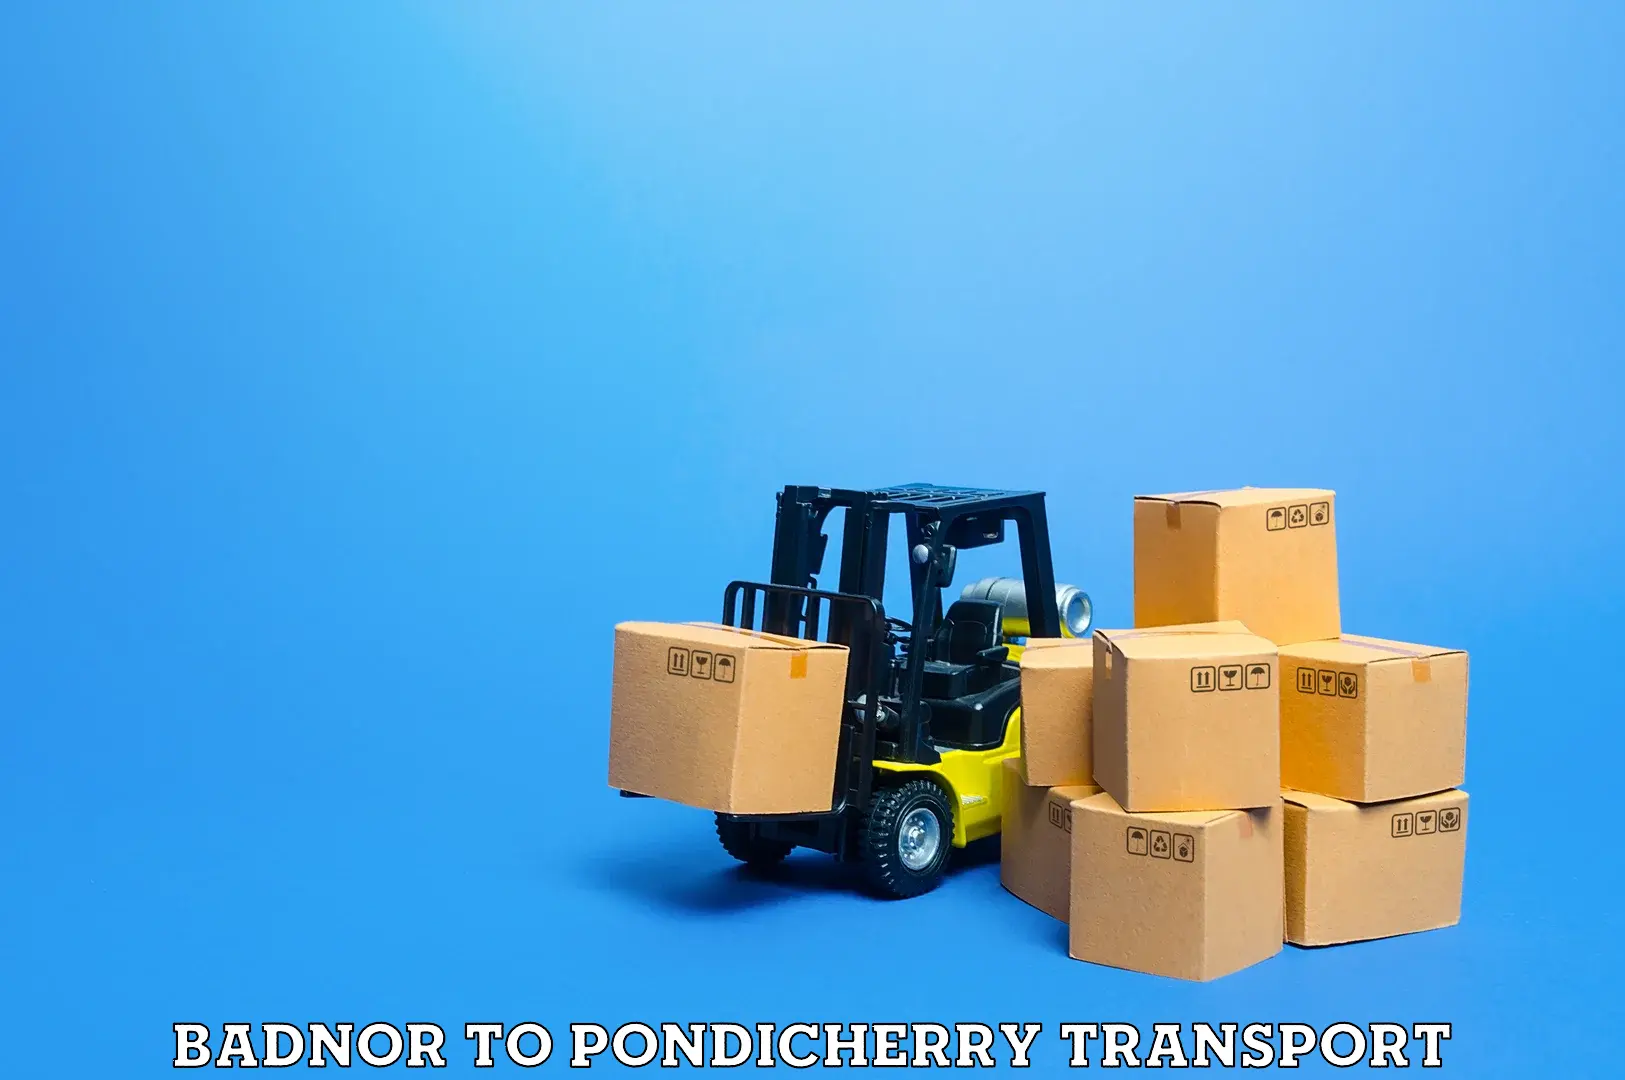 Furniture transport service Badnor to Pondicherry